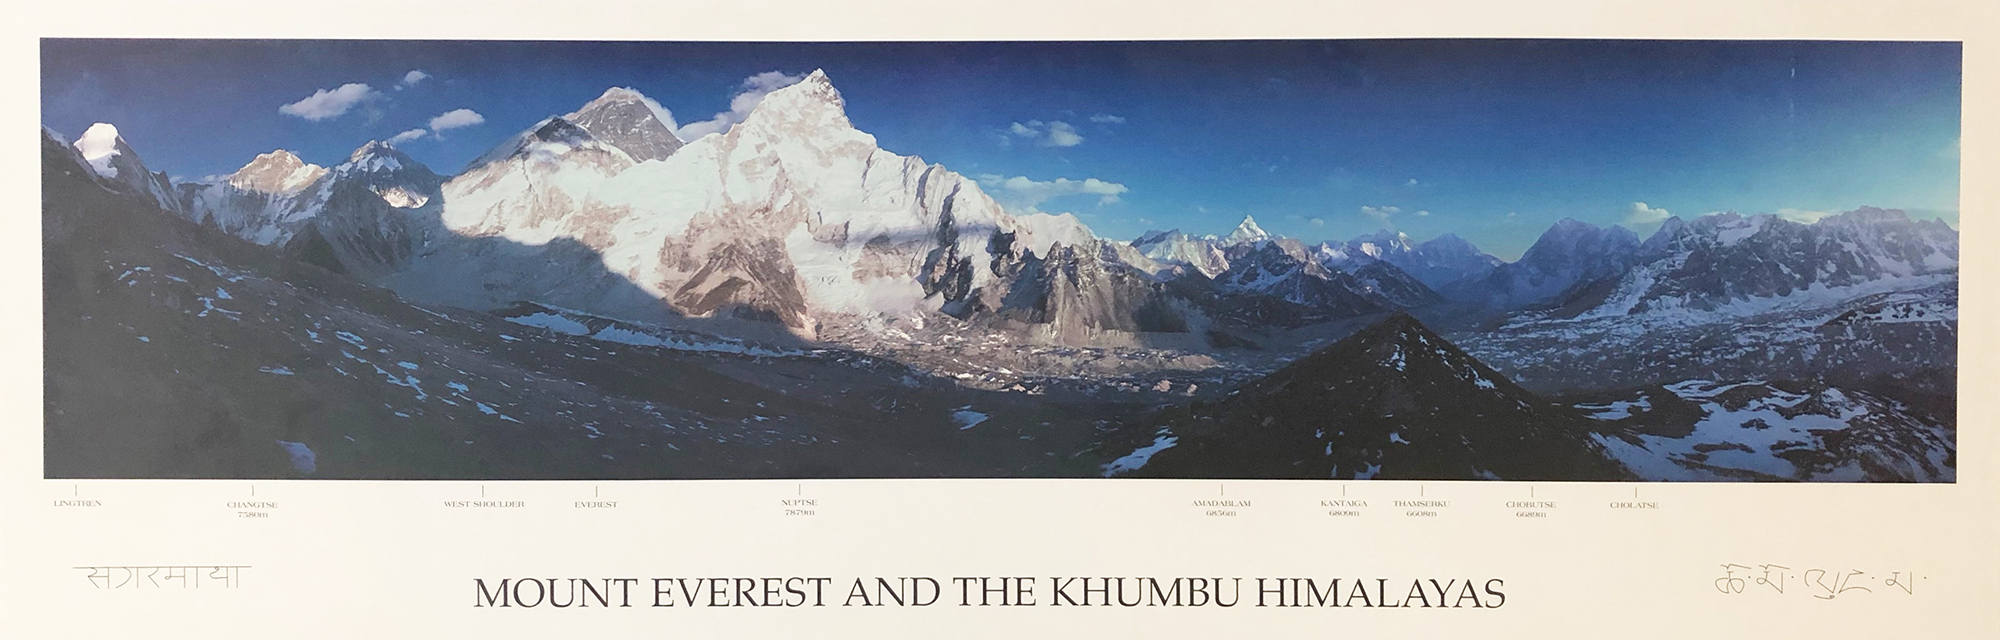 Mount Everest and the Khumbu Himalayas